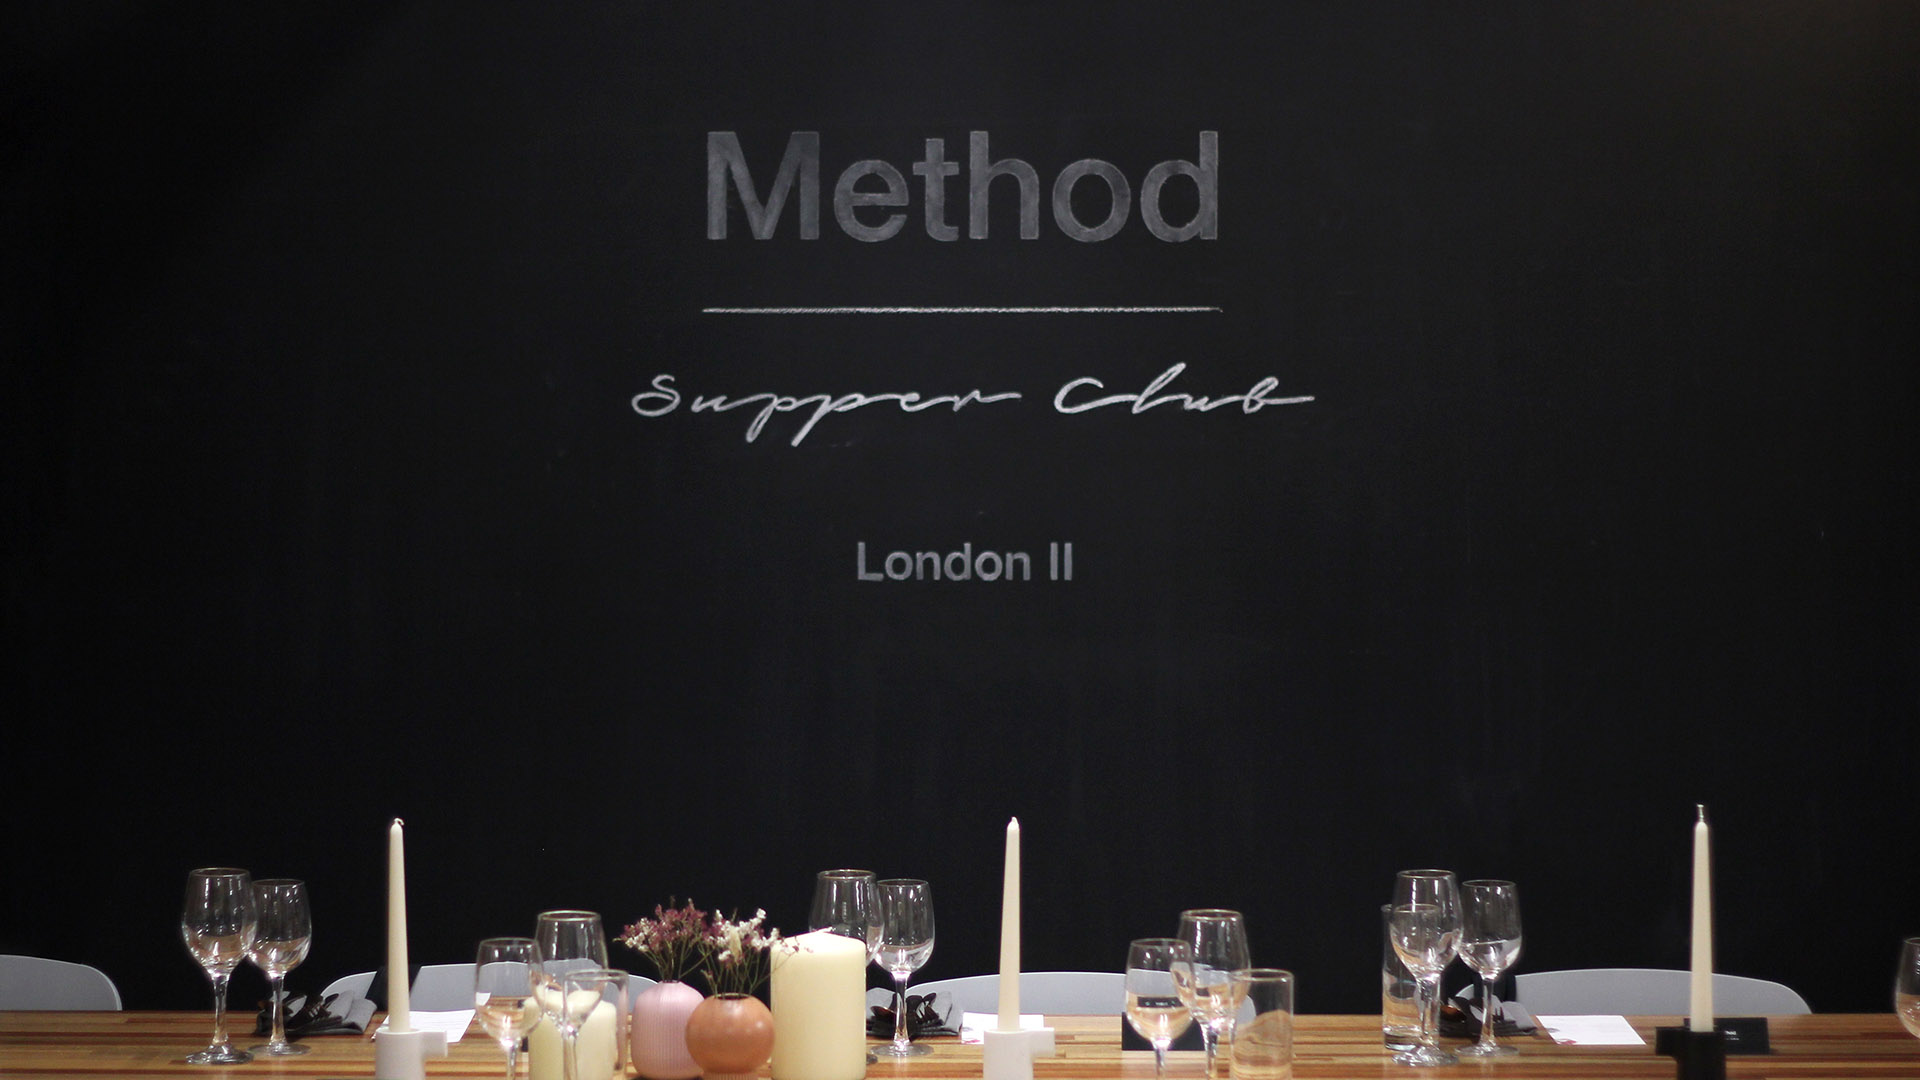 Method Supper Club